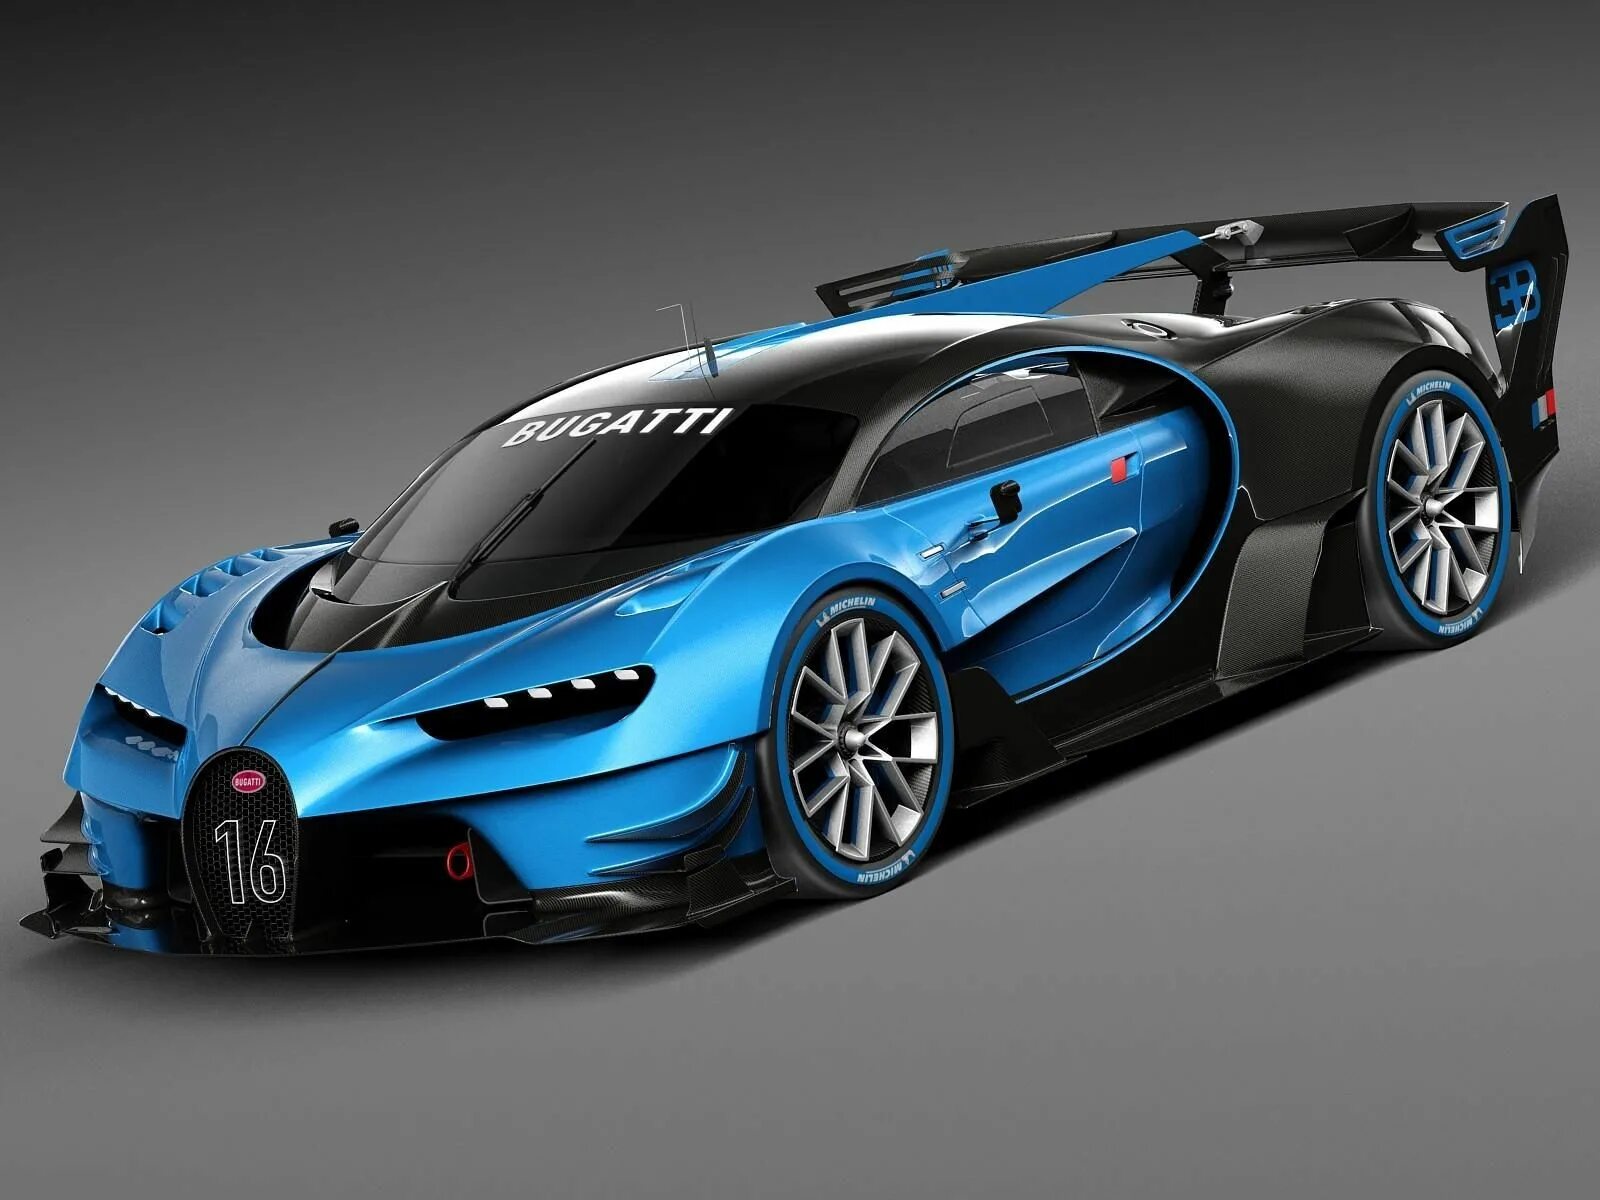 Bugatti Vision Gran Turismo 2015 Concept. Бугатти ЧИРОН концепт. Bugatti Vision Gran Turismo Concept 2016. Бугатти Шерон концепт. Bugatti edition